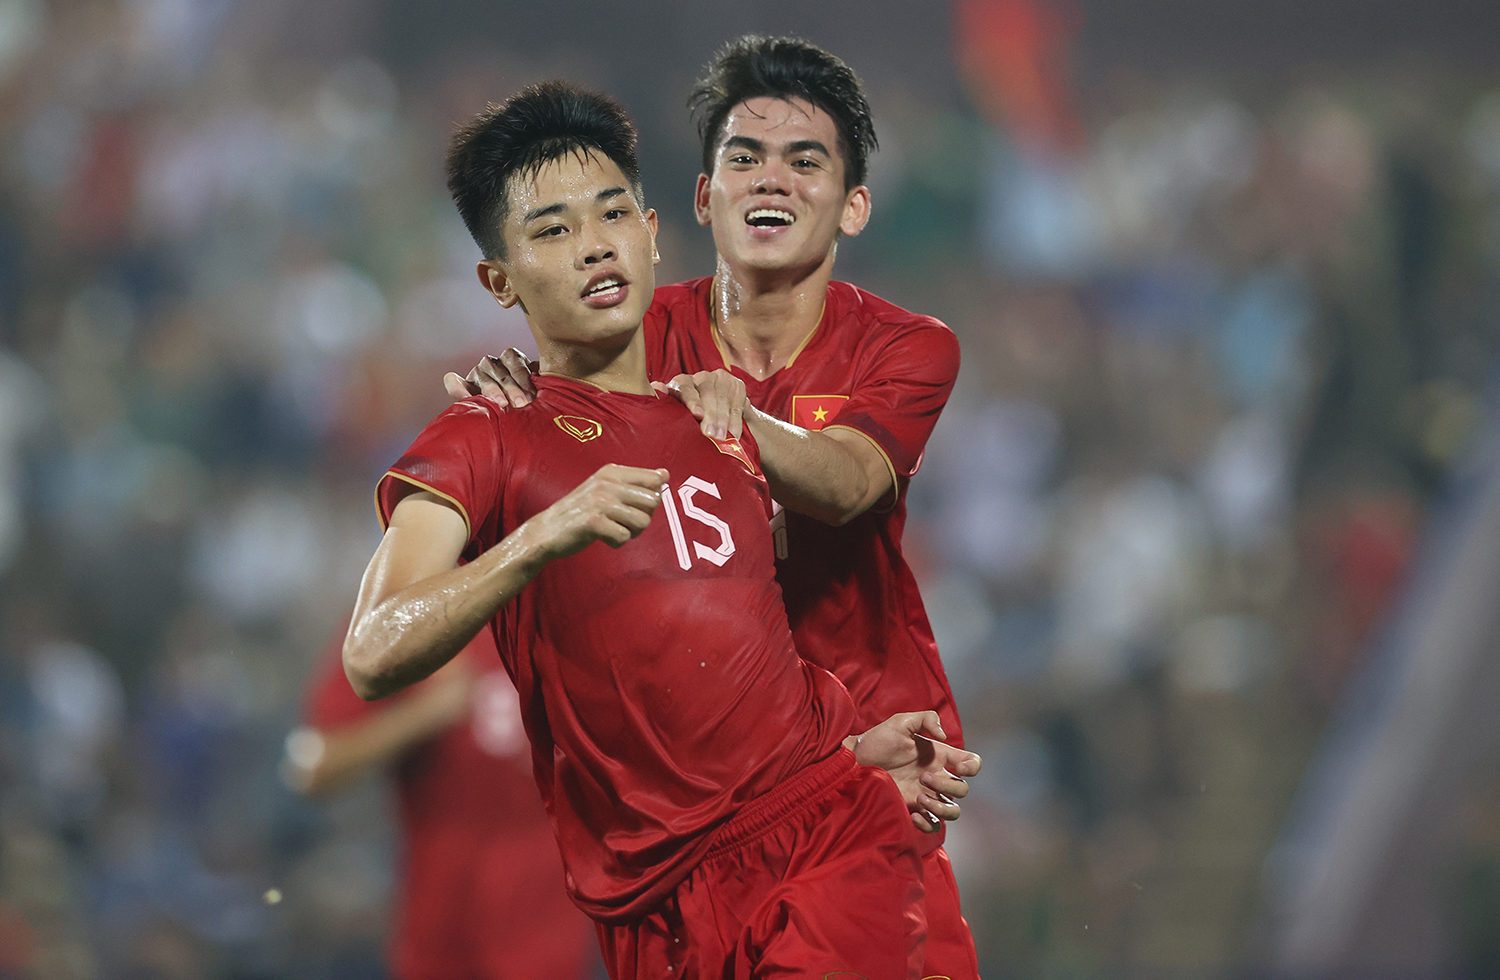 U23 Việt Nam vs U23 Kuwait: Tầm cao bóng đá Việt Nam ở đâu? (22h30 ngày 17/4, VTV5 & FPT Play trực tiếp) - Ảnh 2.